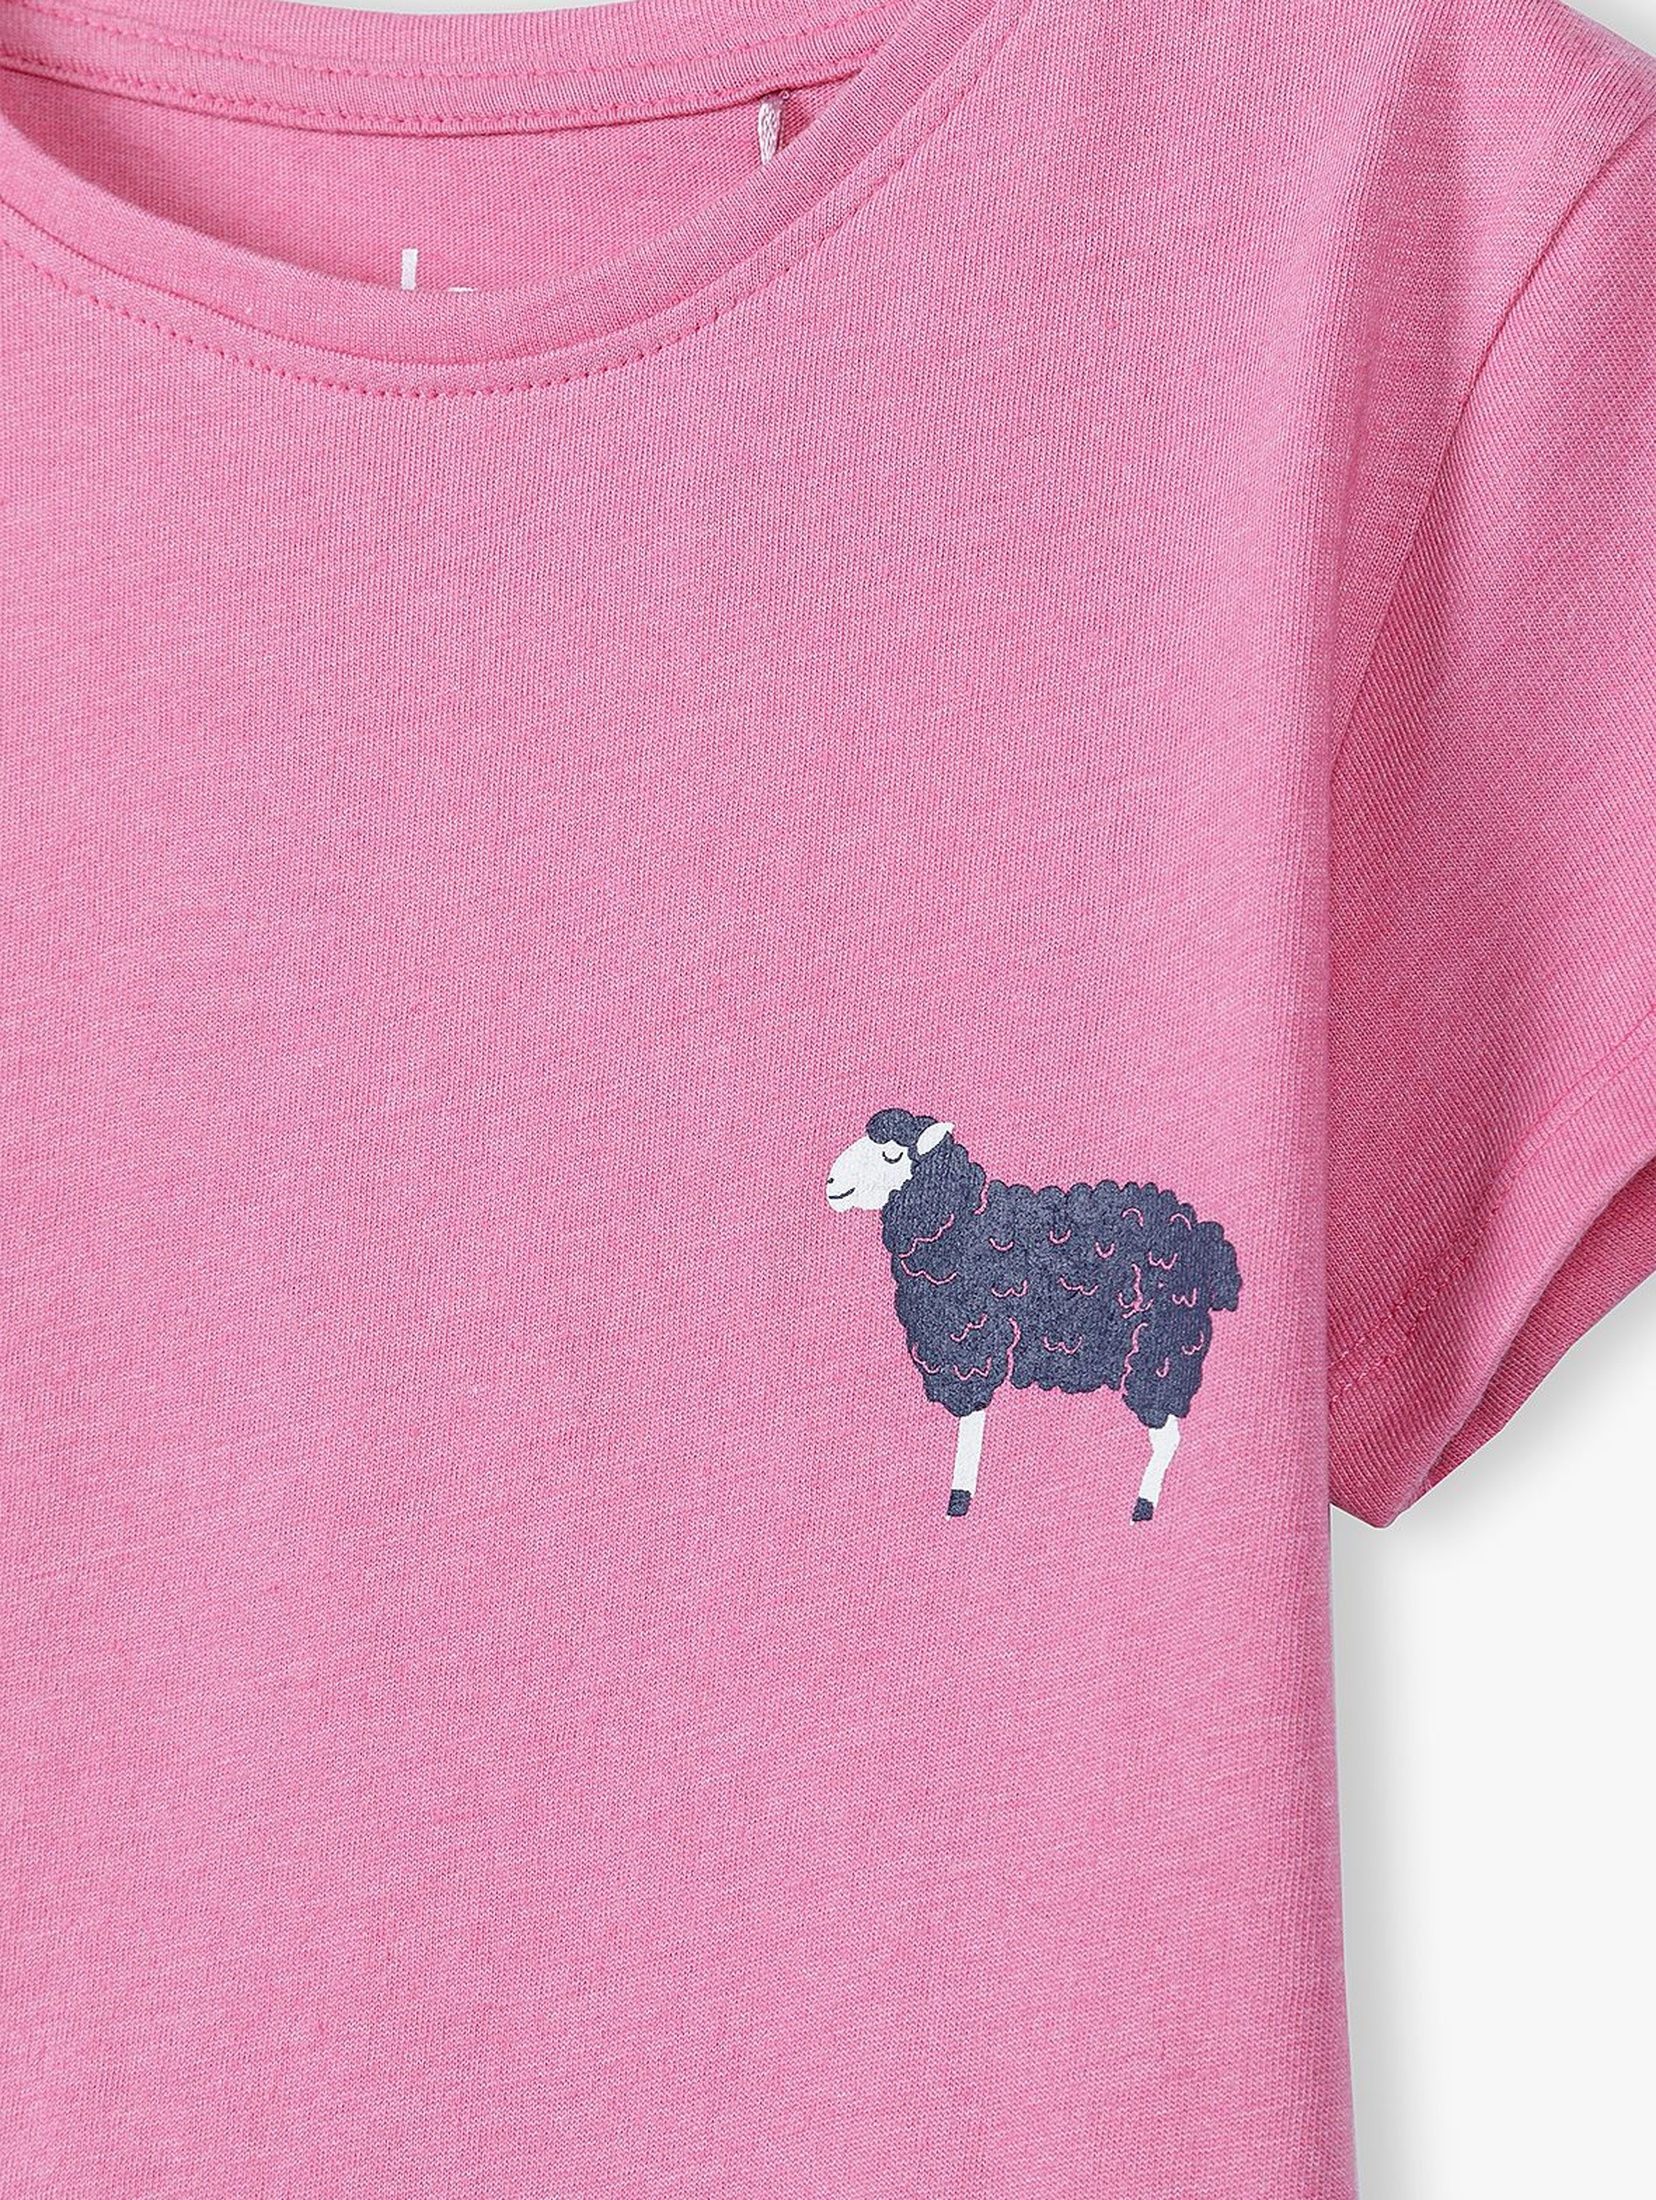 Różowy t-shirt dziewczęcy z czarną owieczką